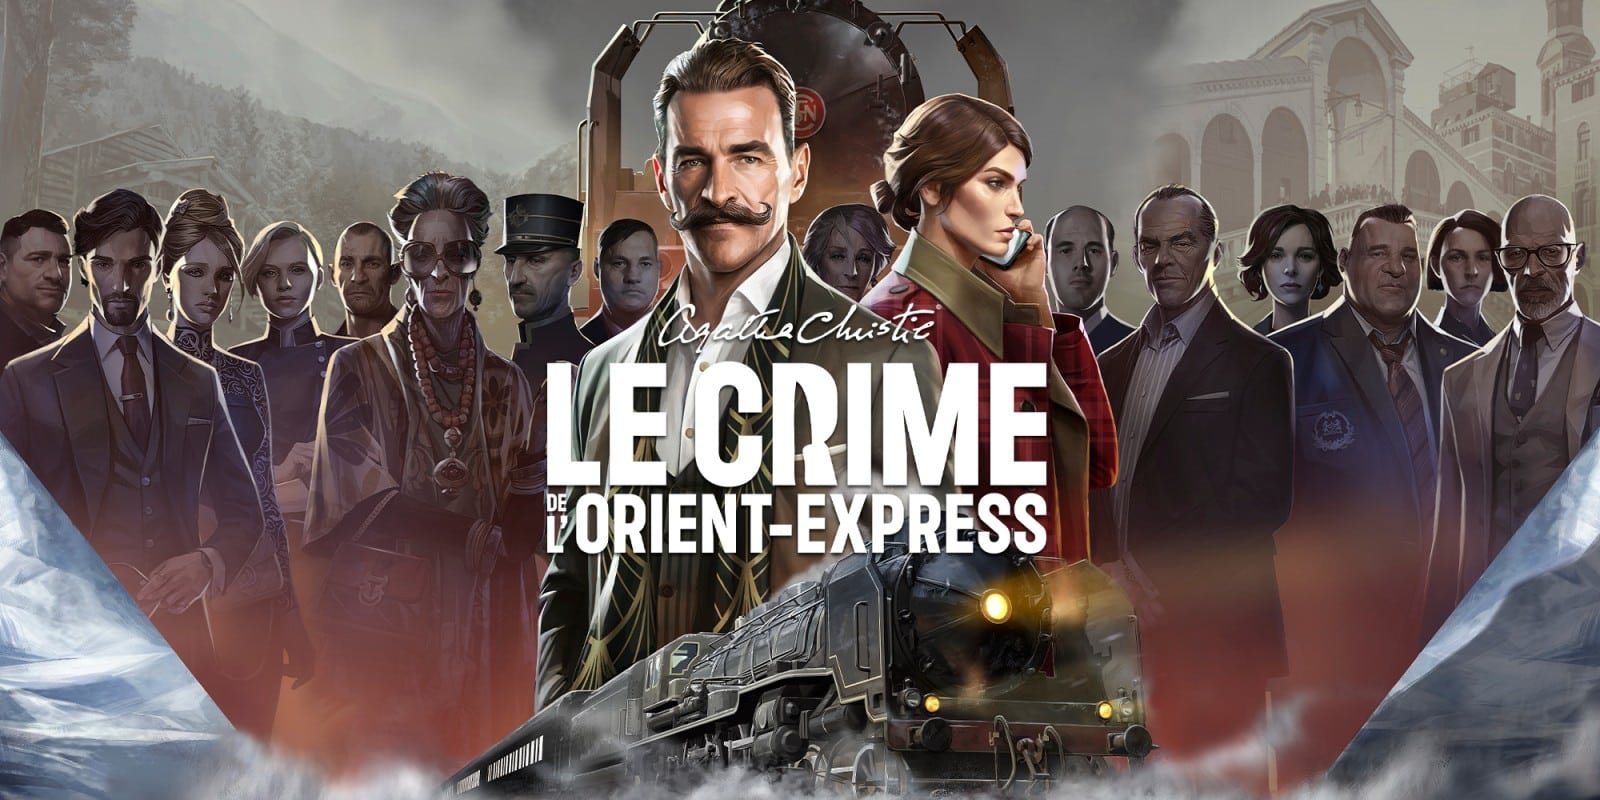 Agatha Christie – Le Crime de l’Orient-Express, disponible dès maintenant en édition physique